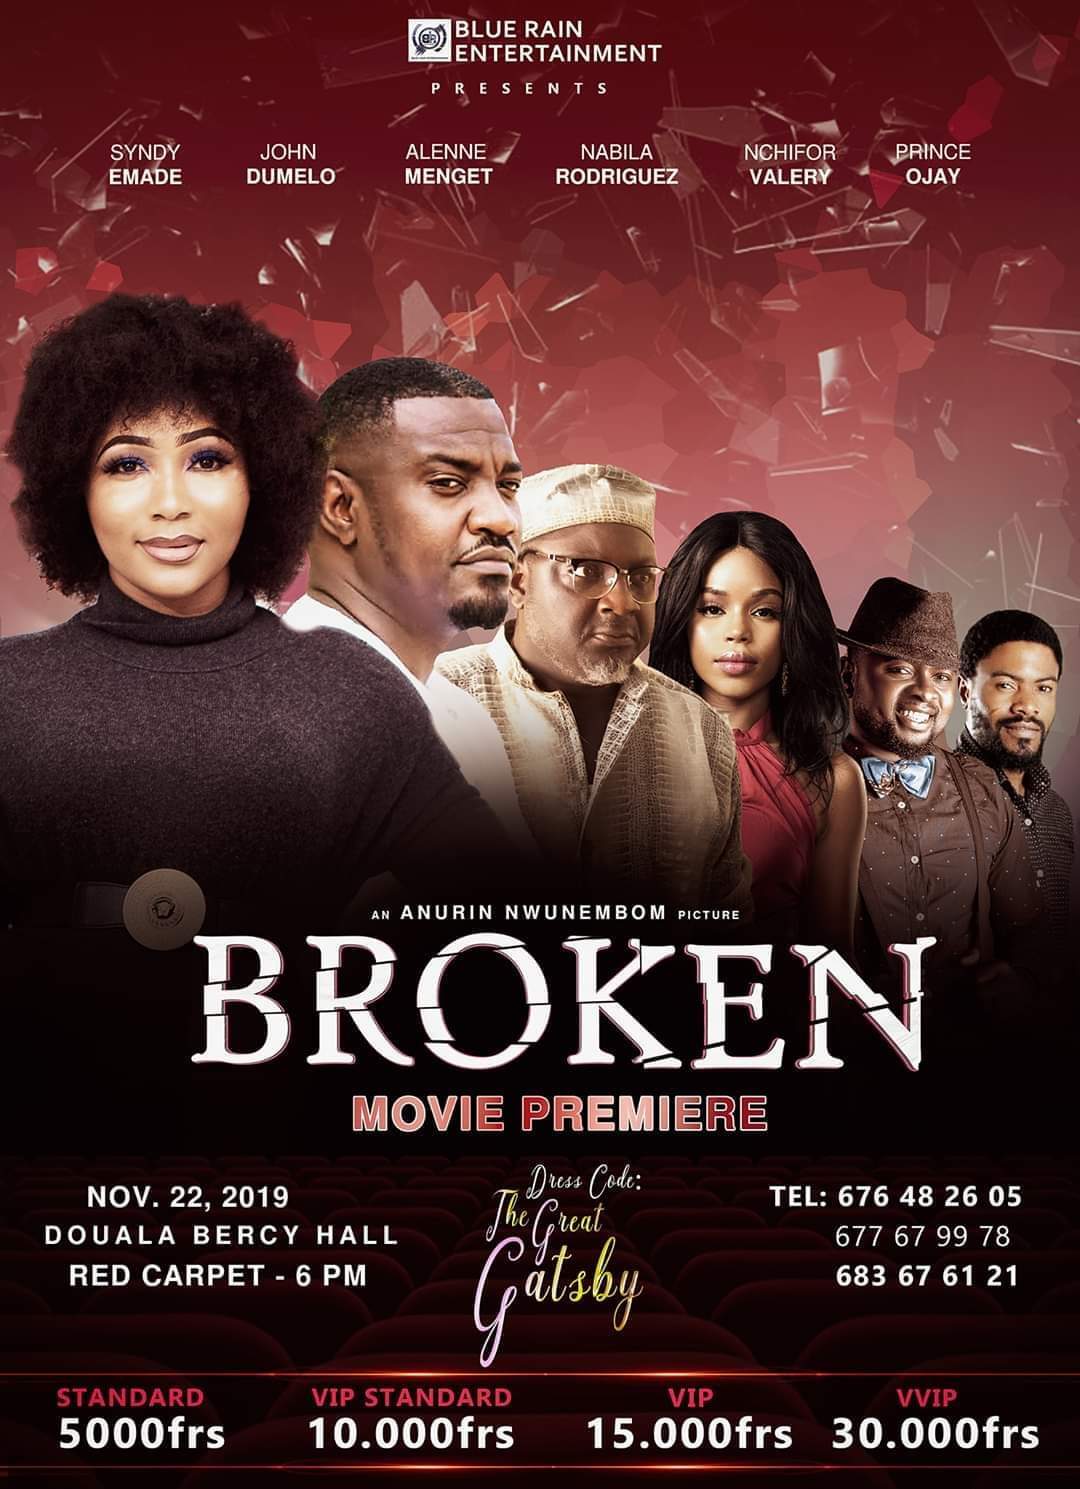 Broken Movie Premiere